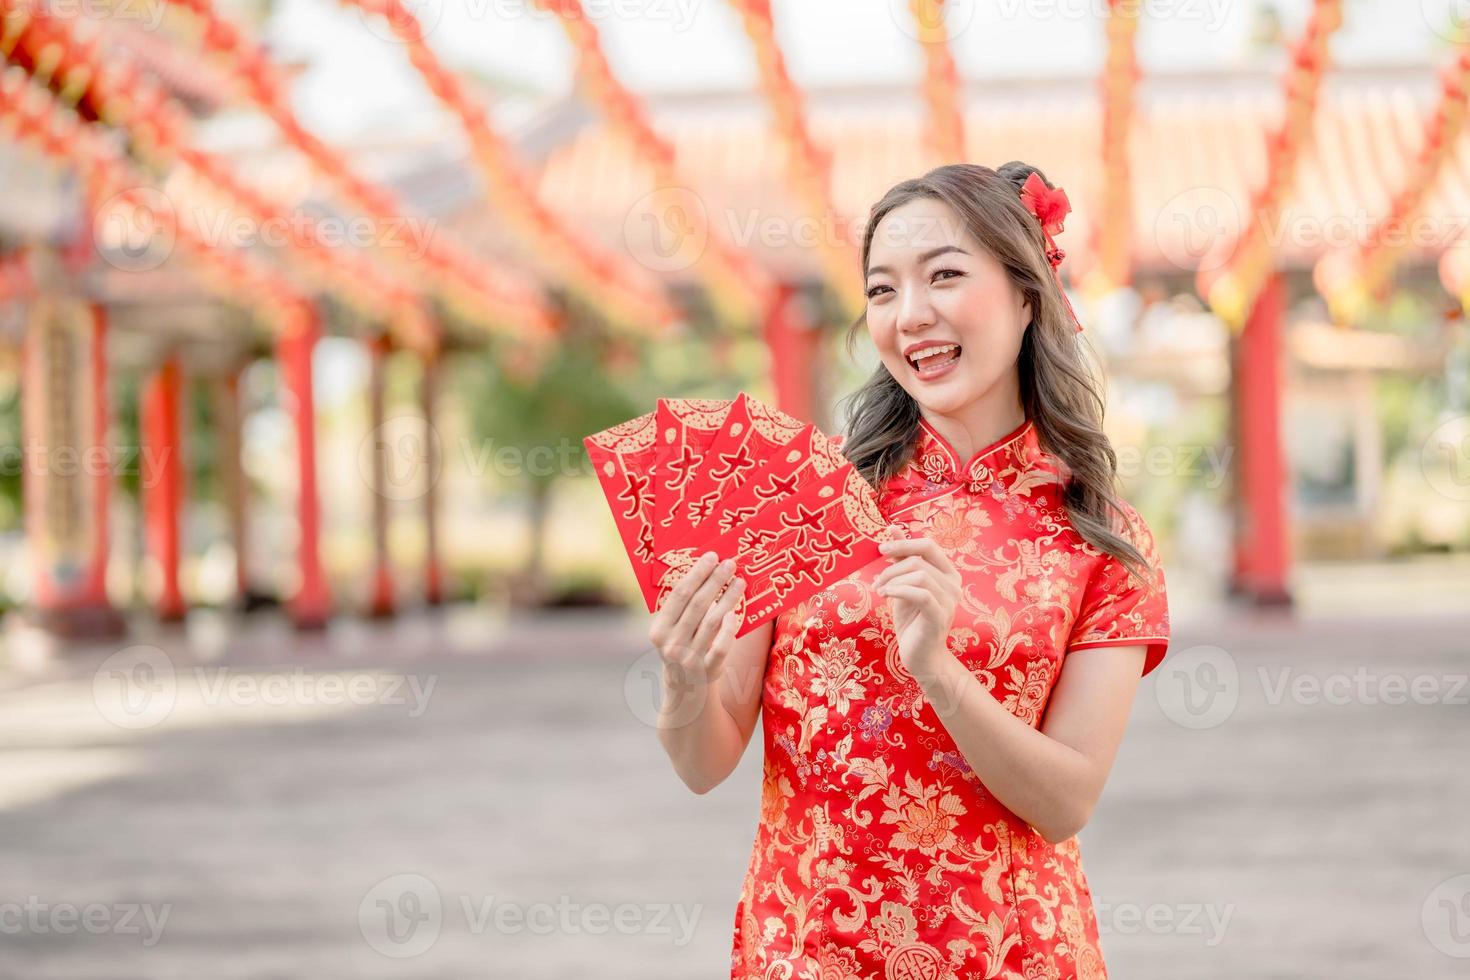 retrato hermosa mujer asiática con traje tradicional cheongsam qipao sosteniendo ang pao, sobres rojos en el templo budista chino. celebrar el año nuevo lunar chino, vacaciones de temporada festiva. foto